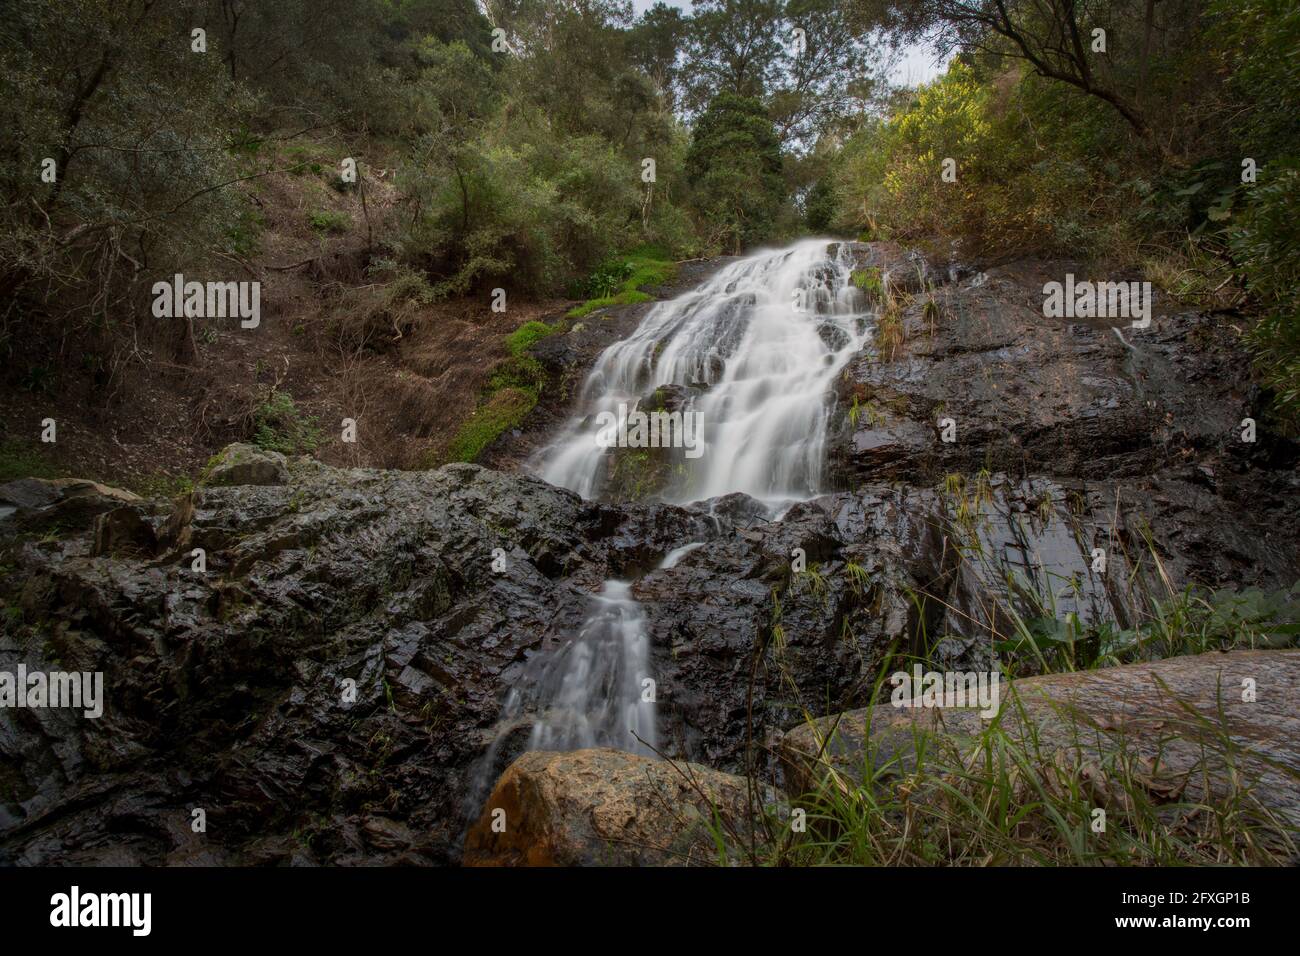 Ein Wasserfall in einem Berg in der Paarl-Region am Westkap, Südafrika.Wasser ist eine knappe Ressource in der Region. Stockfoto